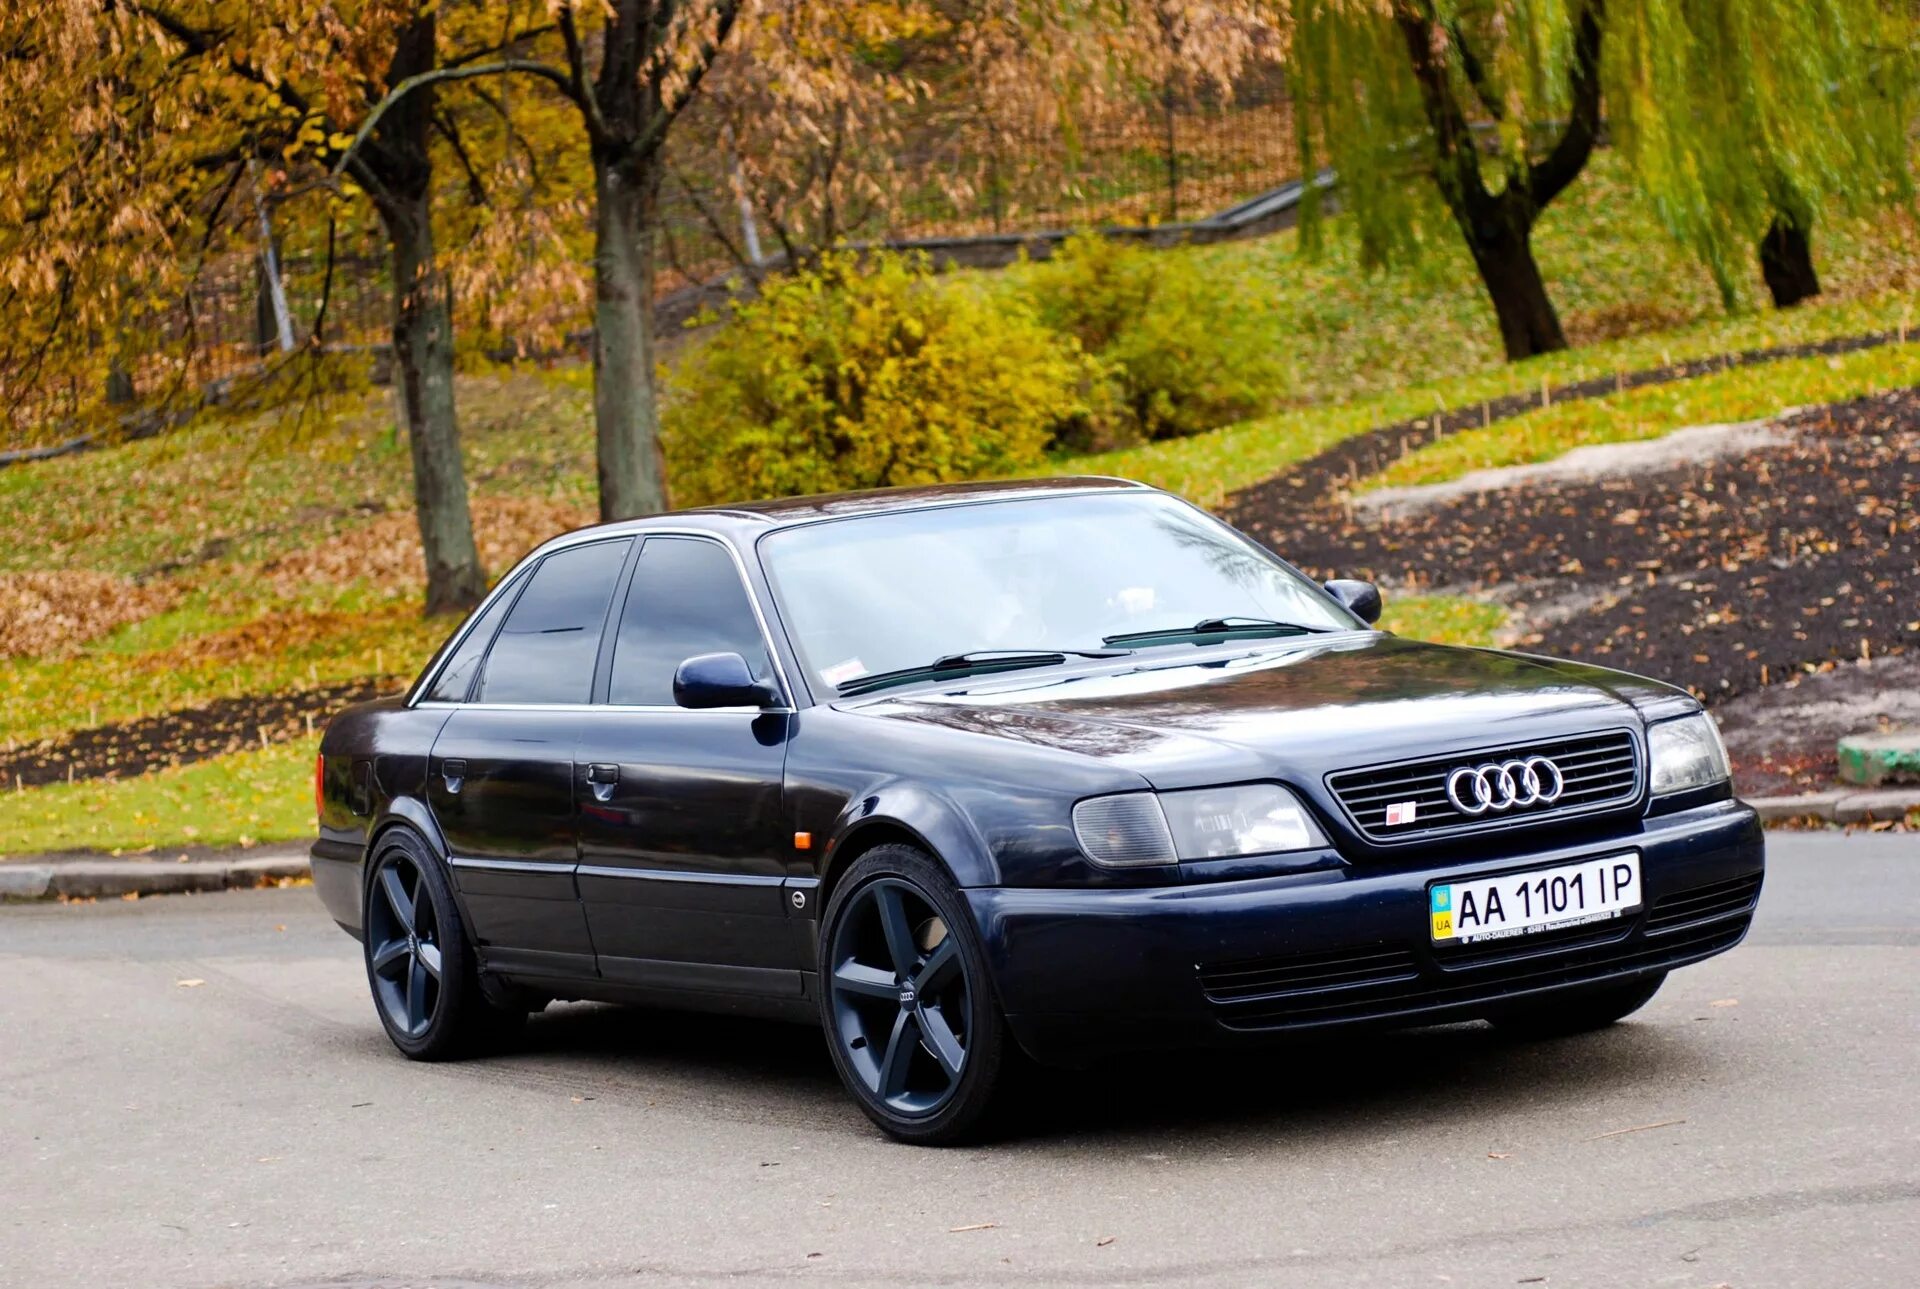 Ауди 4 95 год. Audi a6 c4 1994. Audi 100 c4/a6 c4. Audi a6 c4 1996. Ауди а6 с4 1996.